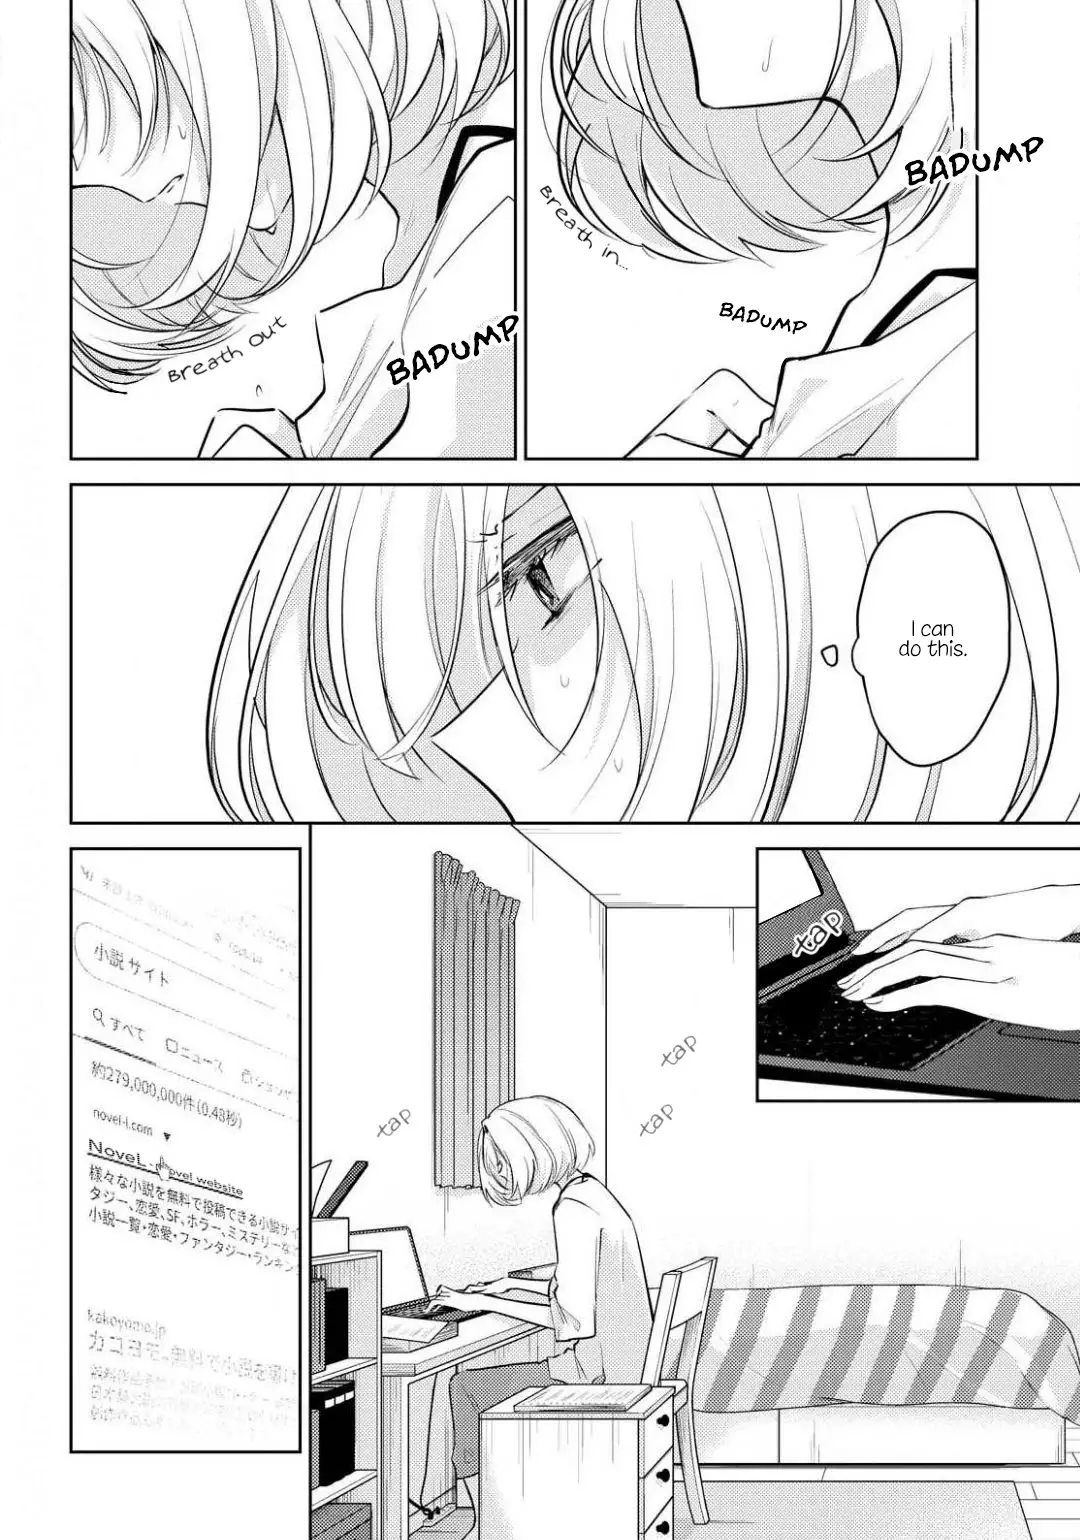 Kimi To Tsuzuru Utakata - 1 page 12